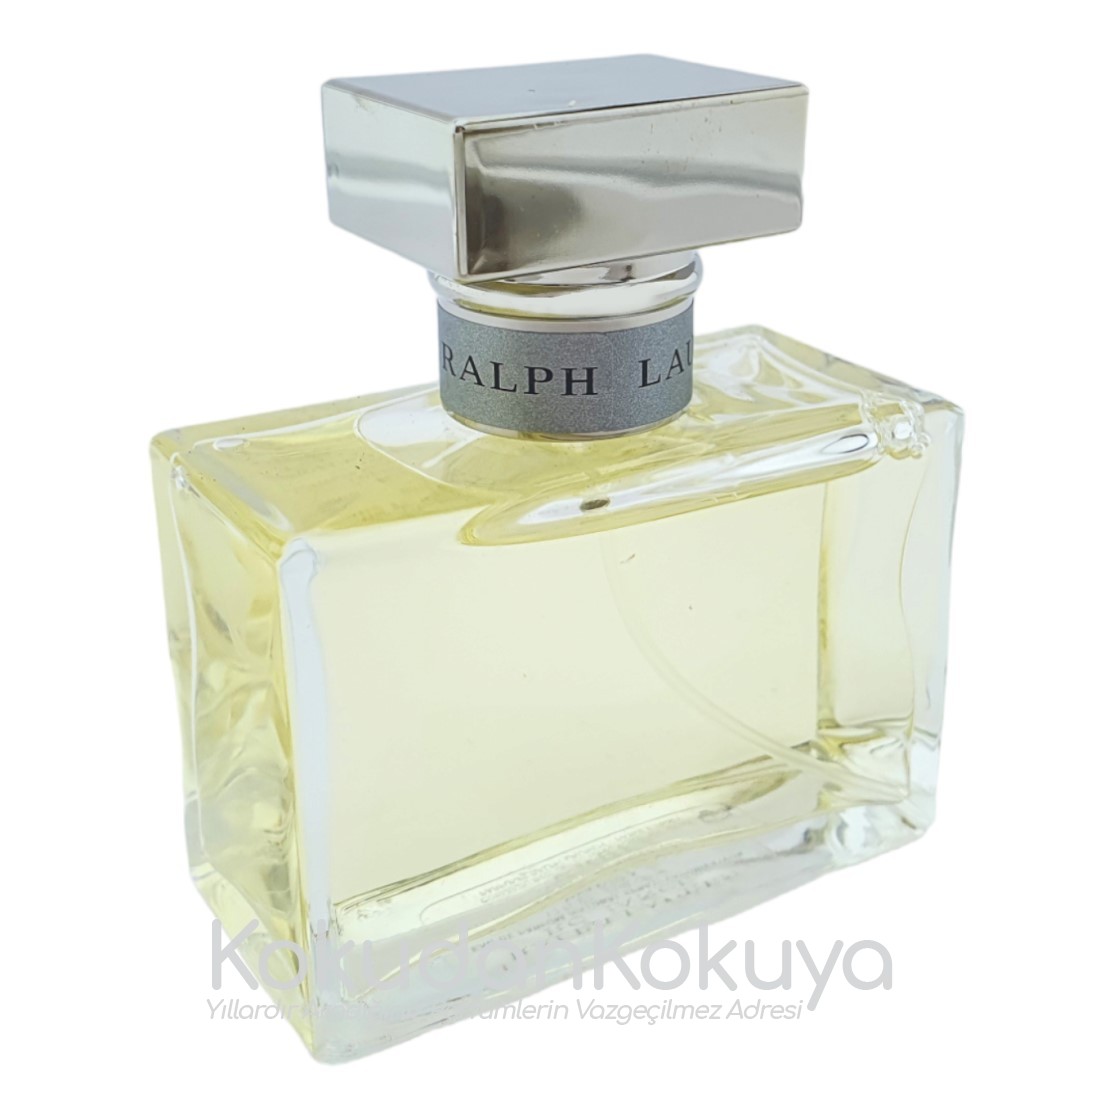 RALPH LAUREN Romance (Vintage) Parfüm Kadın 50ml Eau De Parfum (EDP) Sprey 